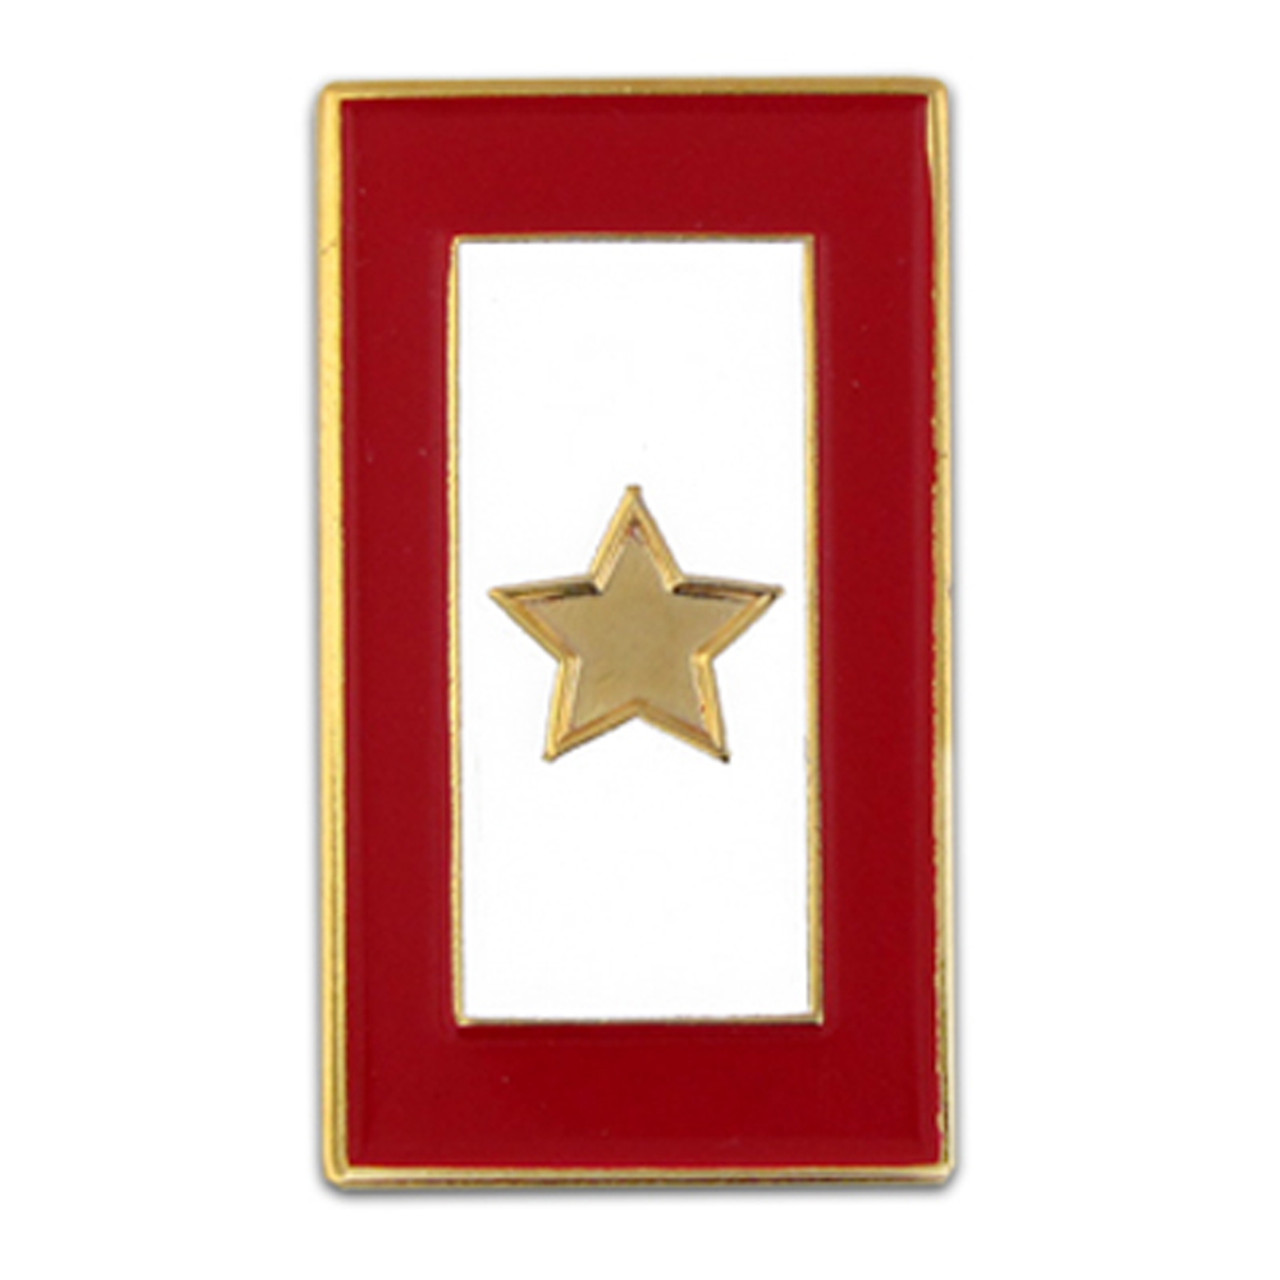 Gold Star Service Flag Pin - một biểu tượng mang ý nghĩa thiêng liêng. Những chú sao vàng rực rỡ trên nền đen tinh giản nhưng đầy cảm hứng luôn khơi gợi niềm tin và sự khao khát chiến thắng. Nếu bạn cần động lực để tiếp thêm sức mạnh cho công việc của mình, hãy chiêm ngưỡng hình ảnh Gold Star Service Flag Pin.